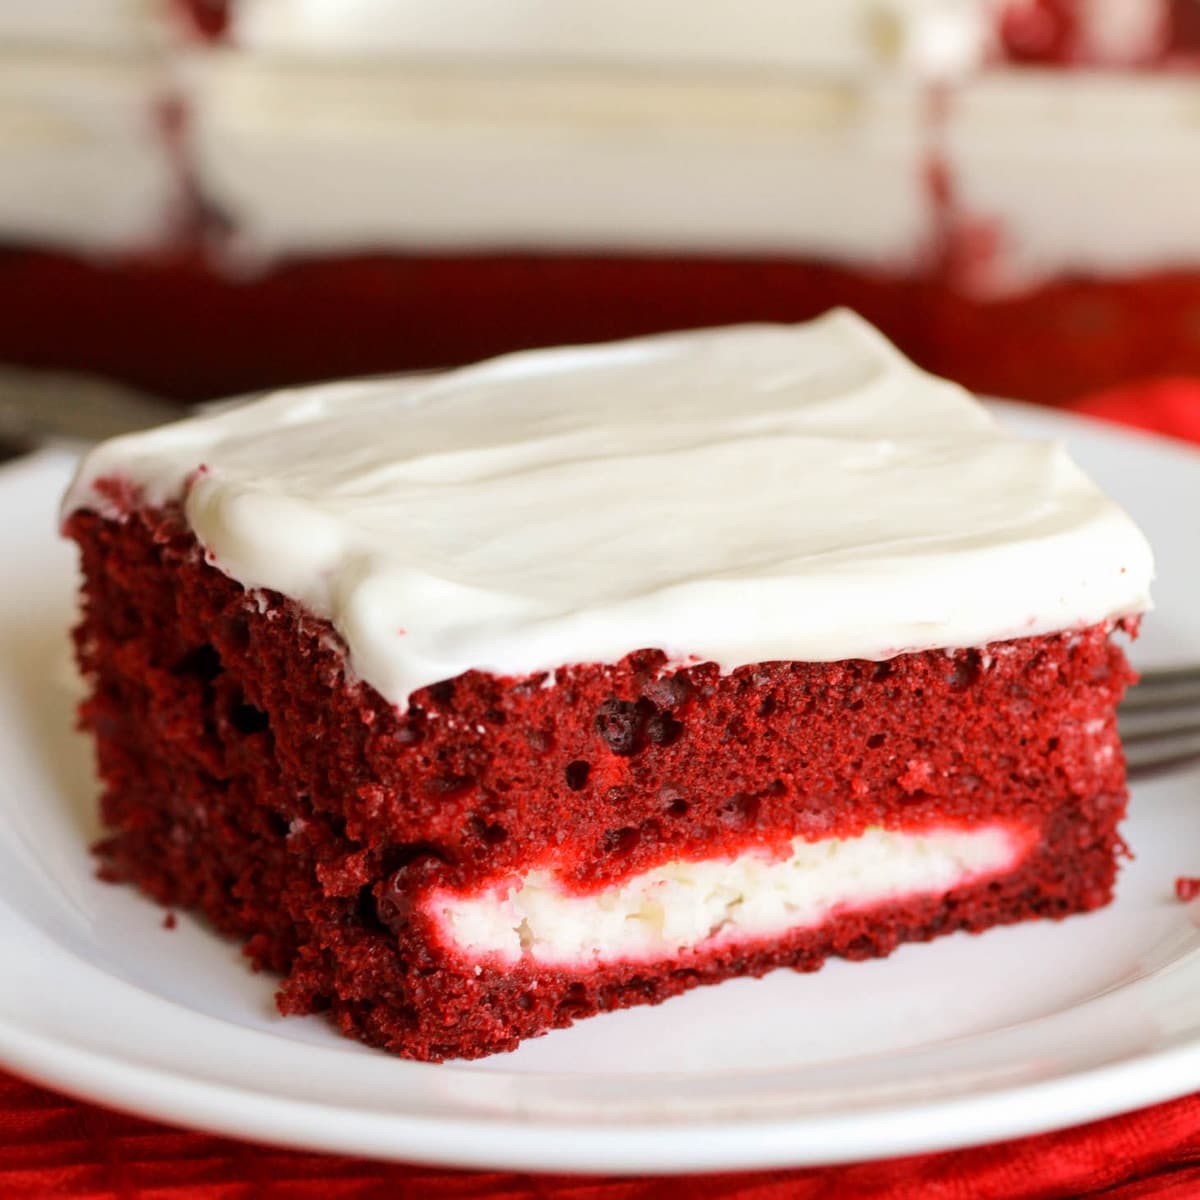 节日蛋糕——盛在盘子里的一片红色天鹅绒芝士蛋糕。